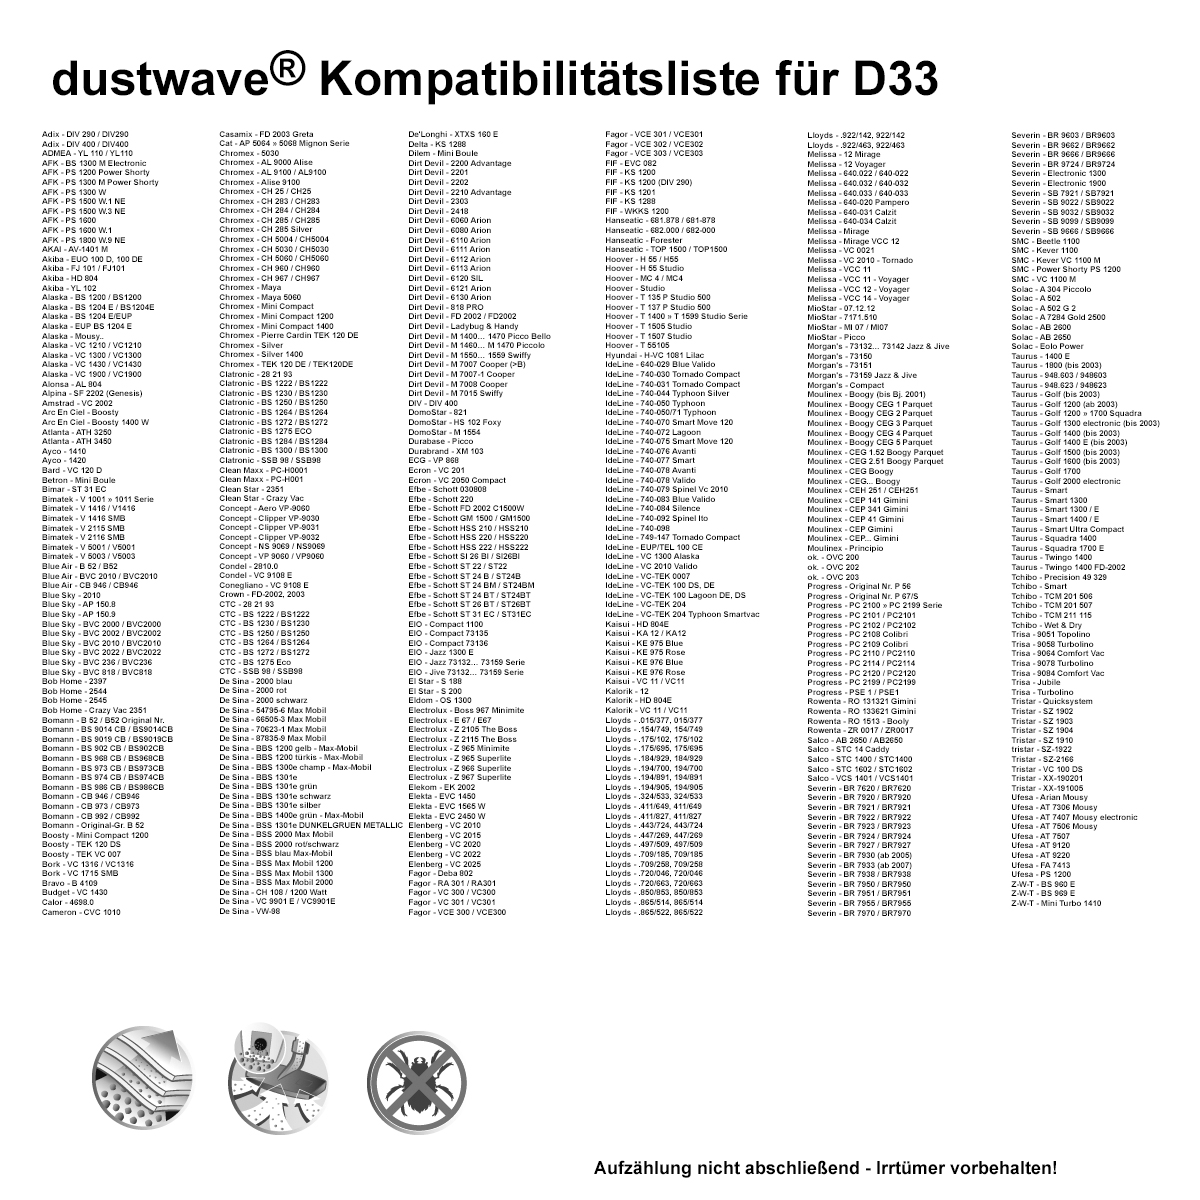 Dustwave® 20 Staubsaugerbeutel für Casamix FD 2003 Greta - hocheffizient, mehrlagiges Mikrovlies mit Hygieneverschluss - Made in Germany